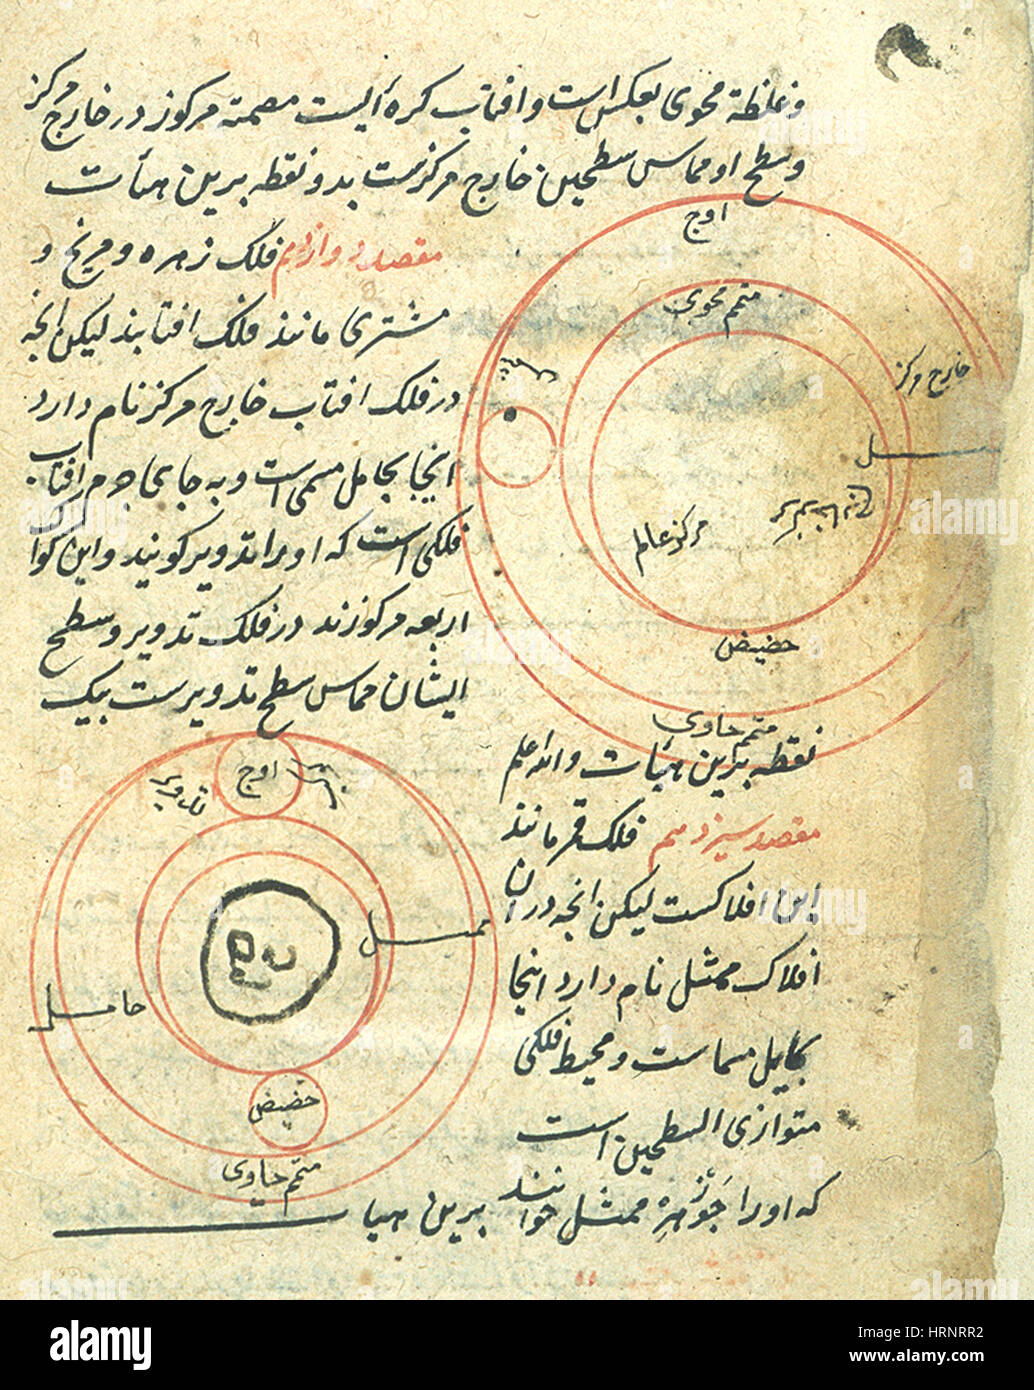 Schéma planétaire, l'astronomie arabe manuscrit, 16e siècle Banque D'Images